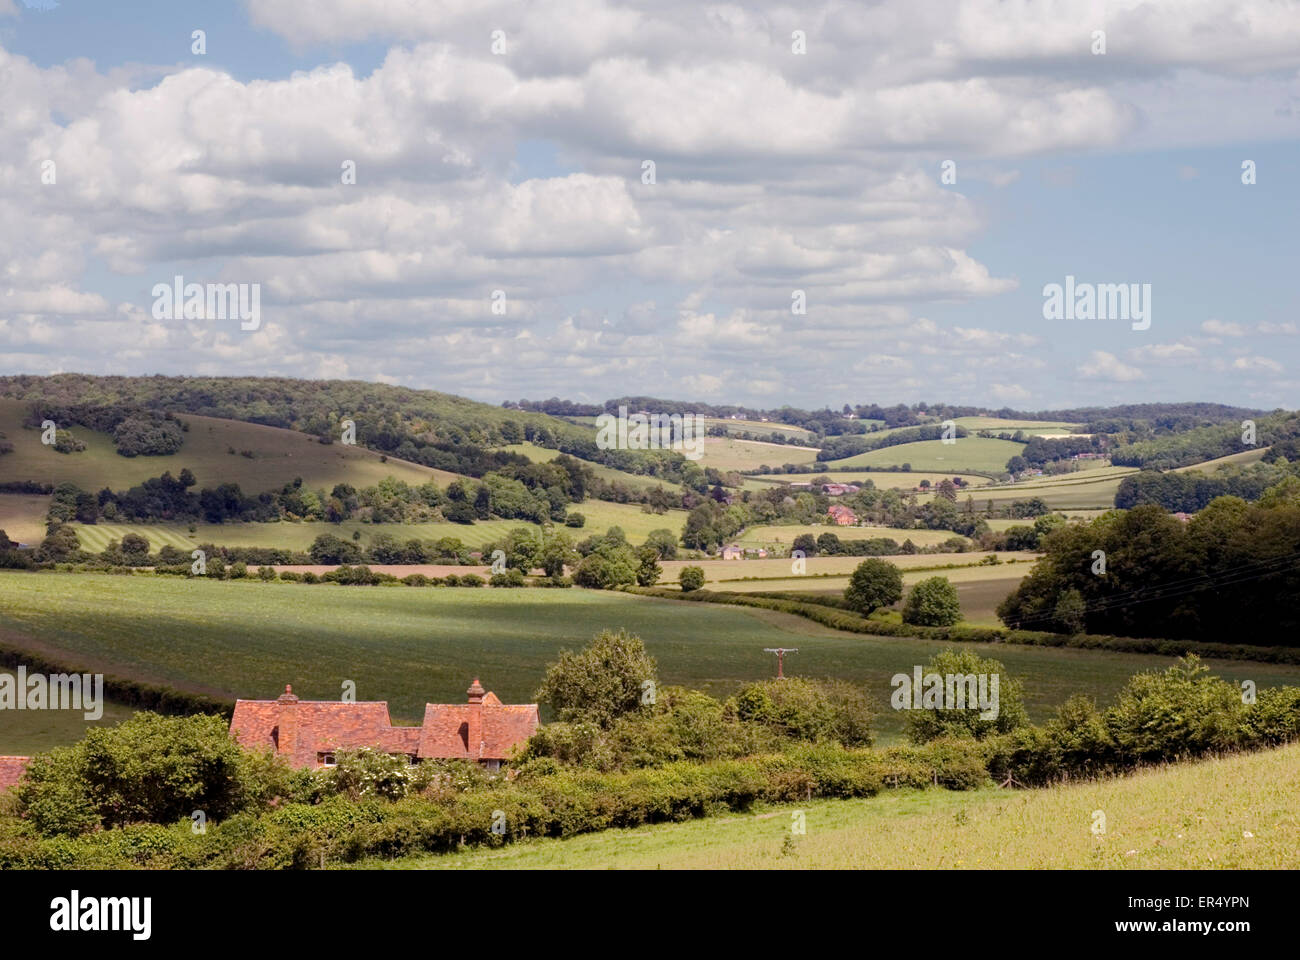 Argent - Chiltern Hills - paysage rural - haies - domaines - Gîte de toits - collines - soleil et ombre Banque D'Images